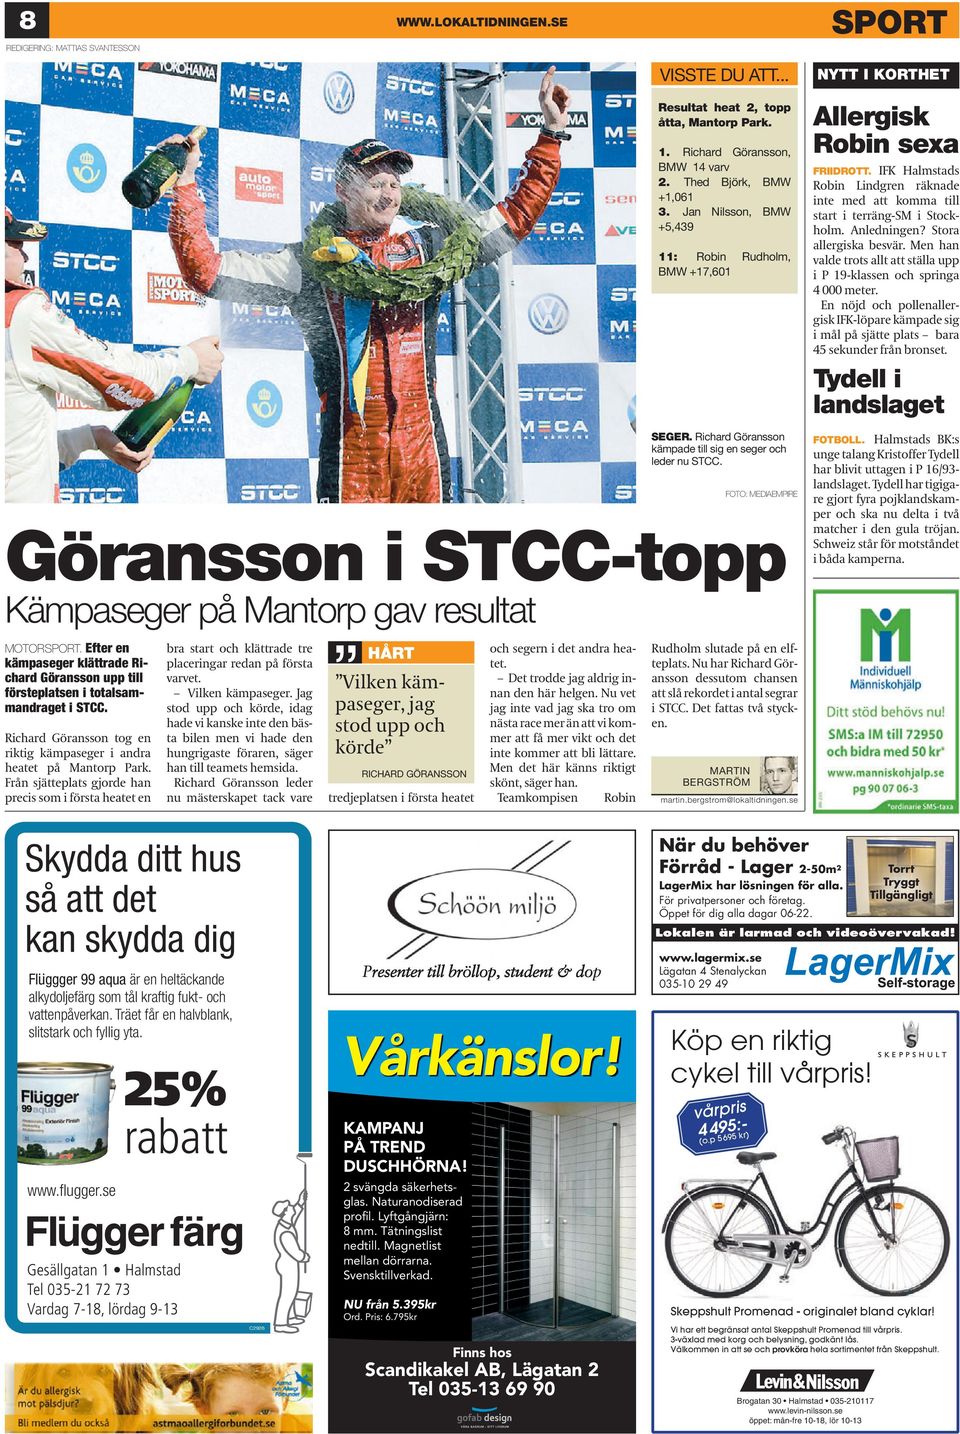 FOTO: MEDIAEMPIRE Göransson i STCC-topp Kämpaseger på Mantorp gav resultat NYTT I KORTHET Allergisk Robin sexa FRIIDROTT.